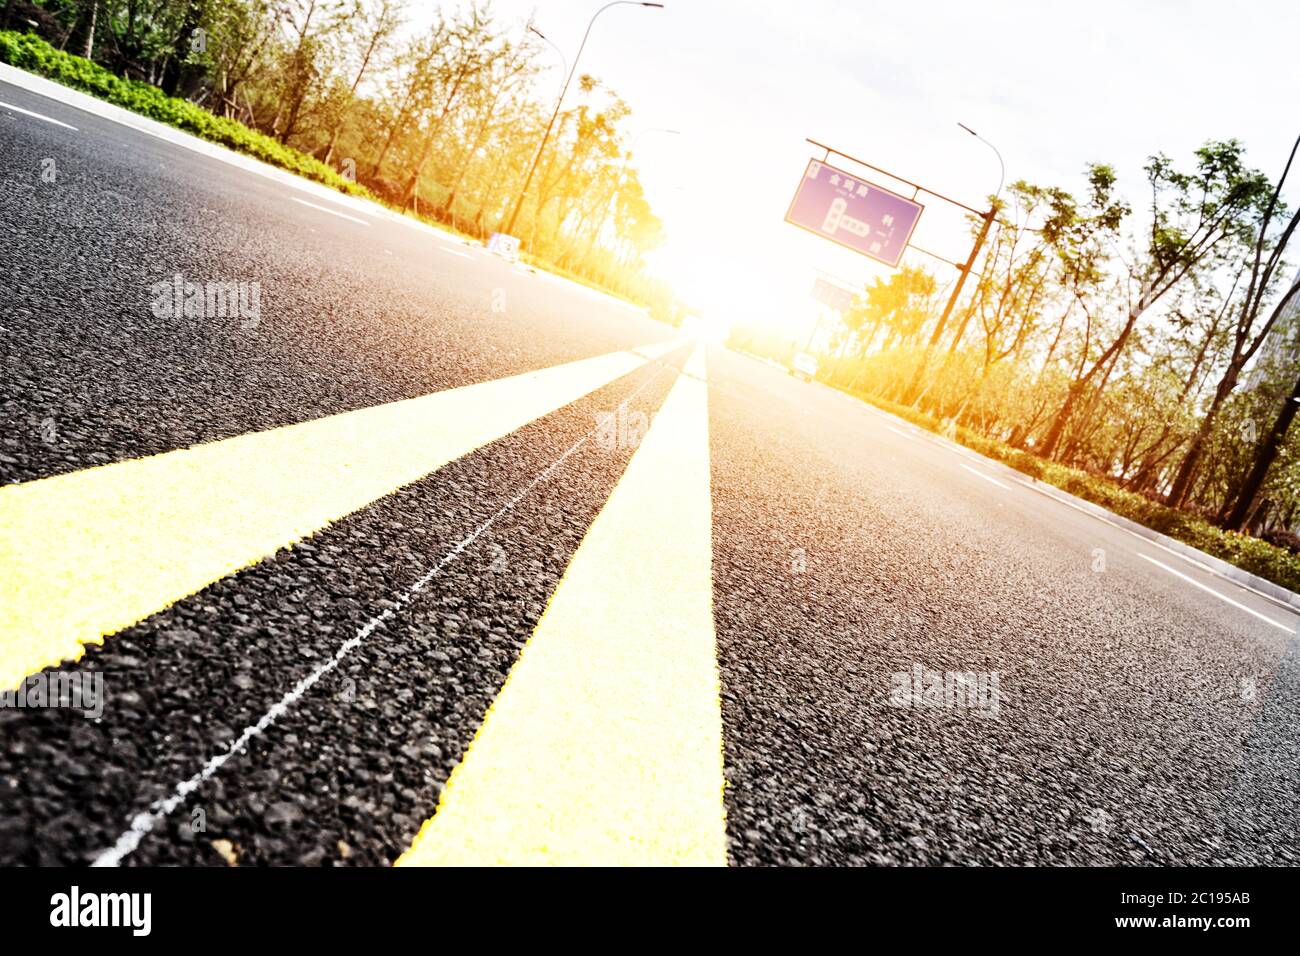 strada asfaltata di sobborgo vuota con fascio solare Foto Stock